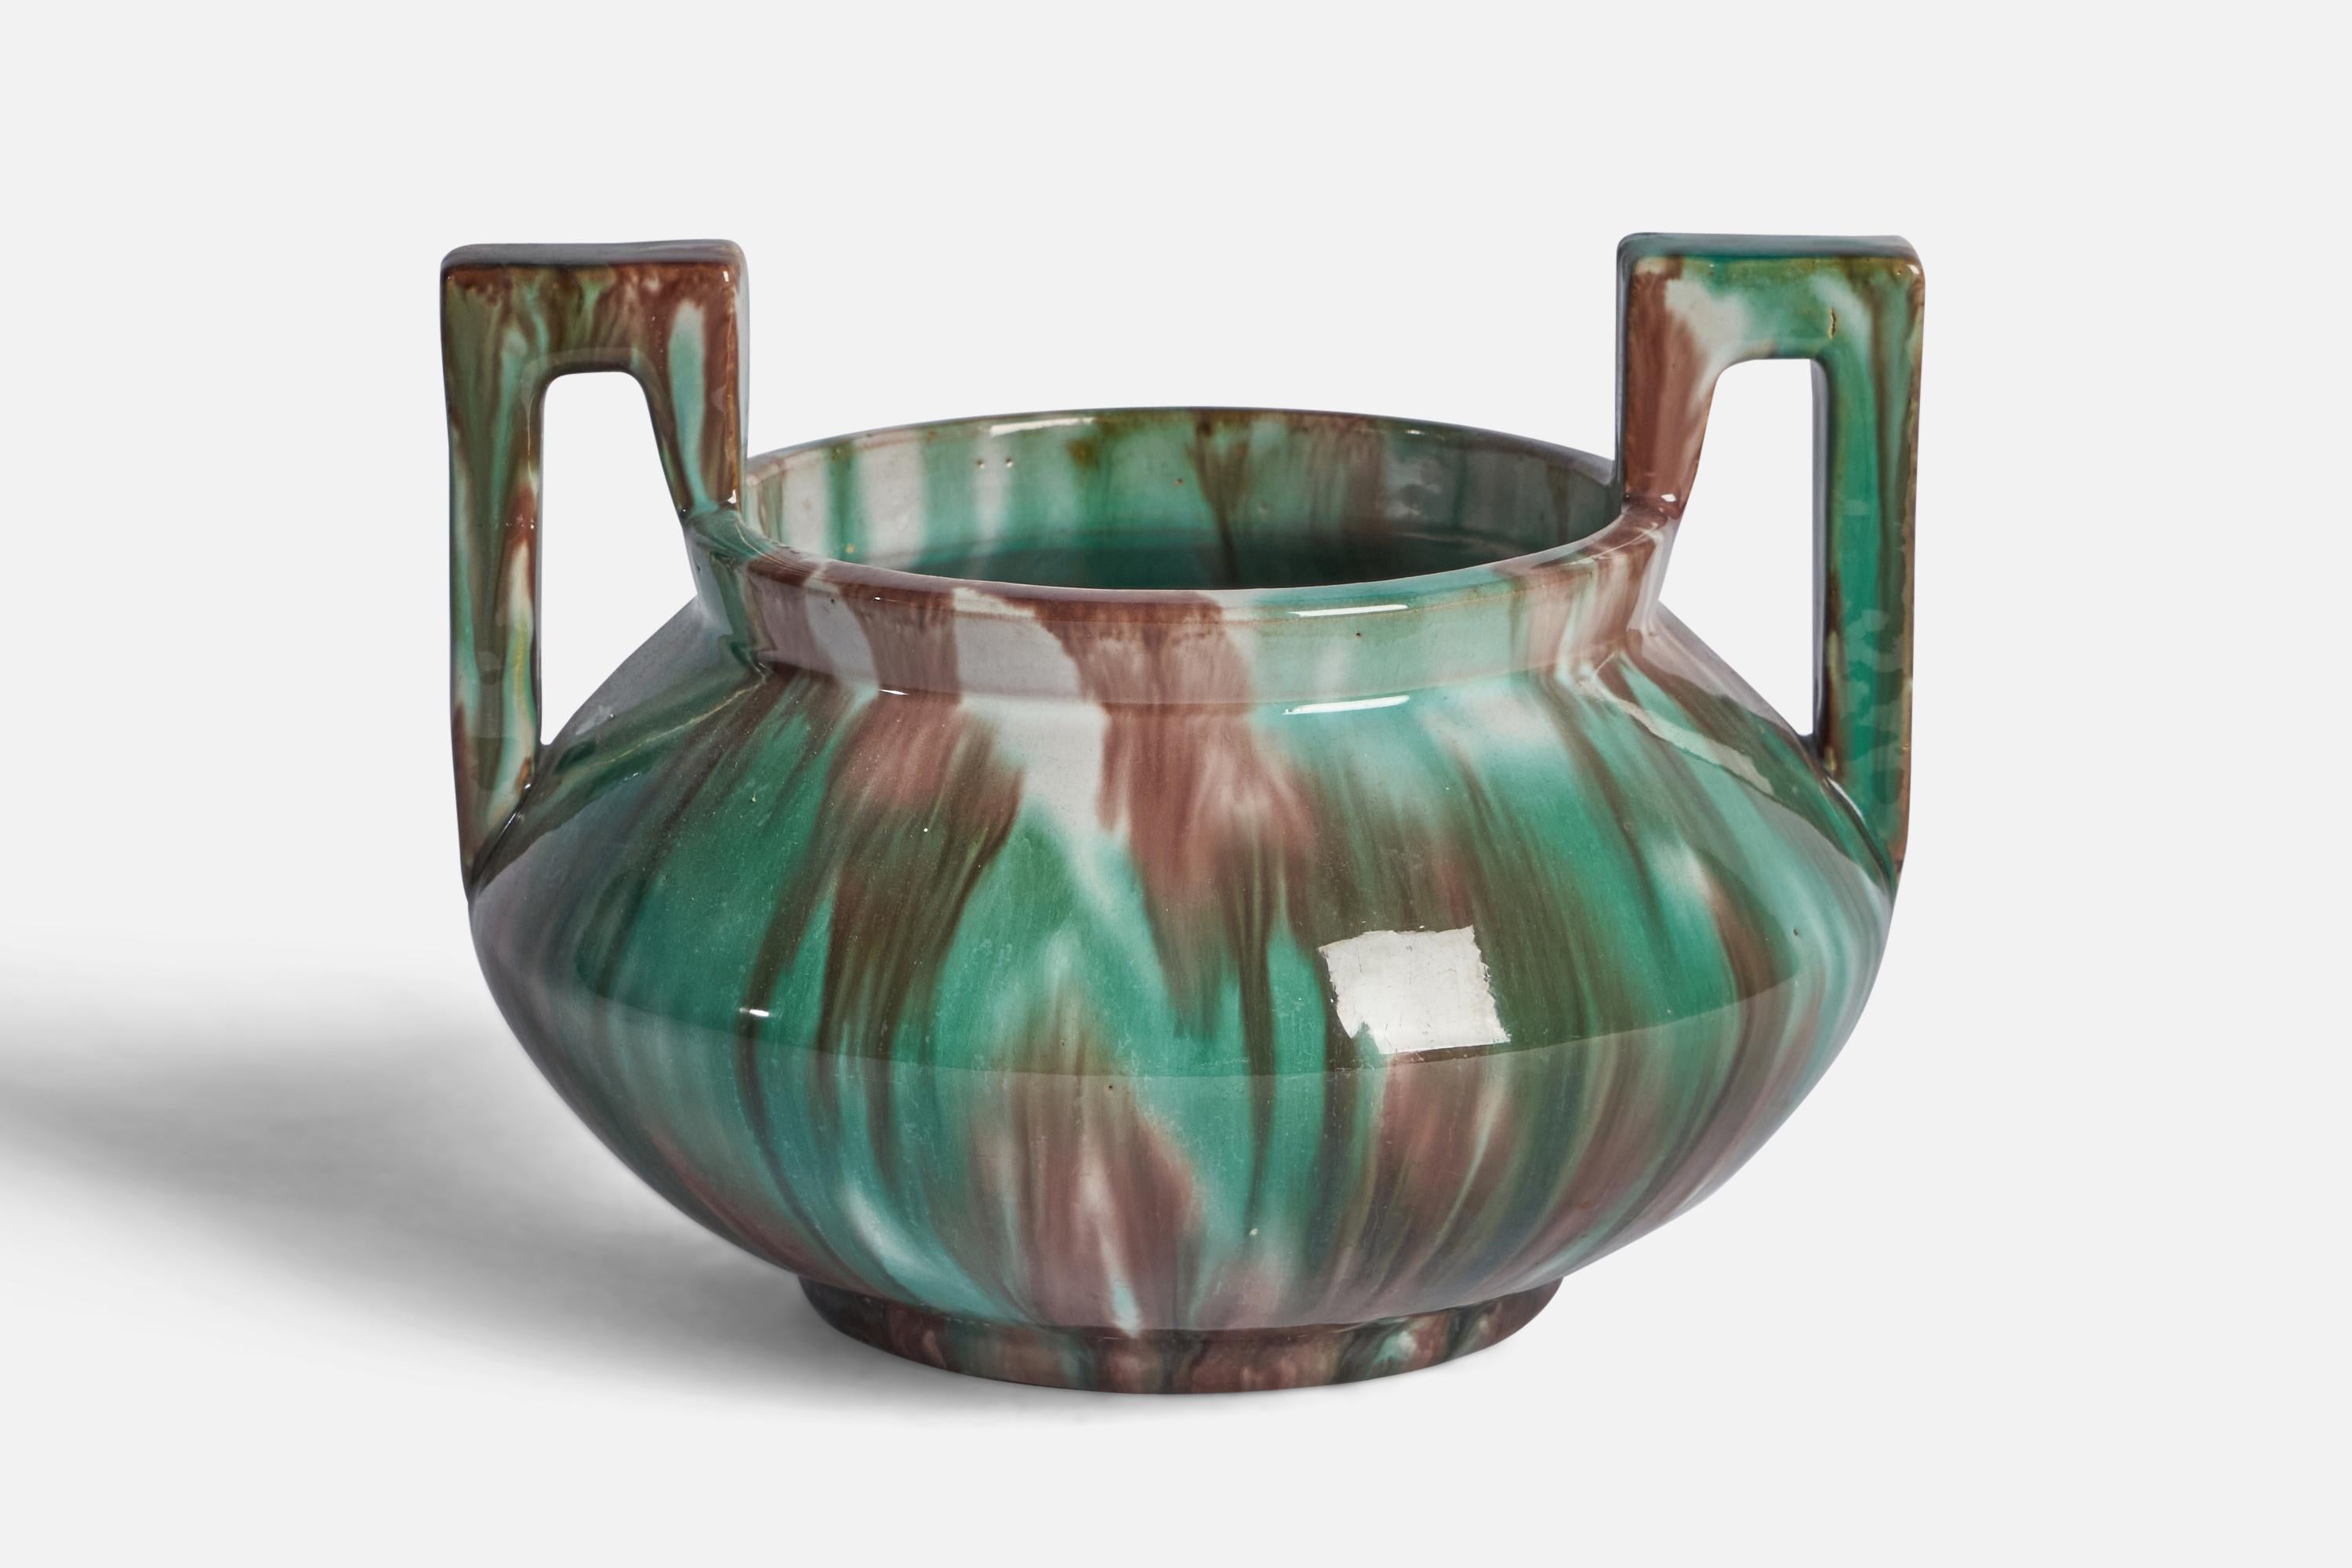 Grün und braun glasierte Vase aus Steingut, entworfen und hergestellt von Gustaf Ahlberg, Höganäs, Schweden, um 1920.